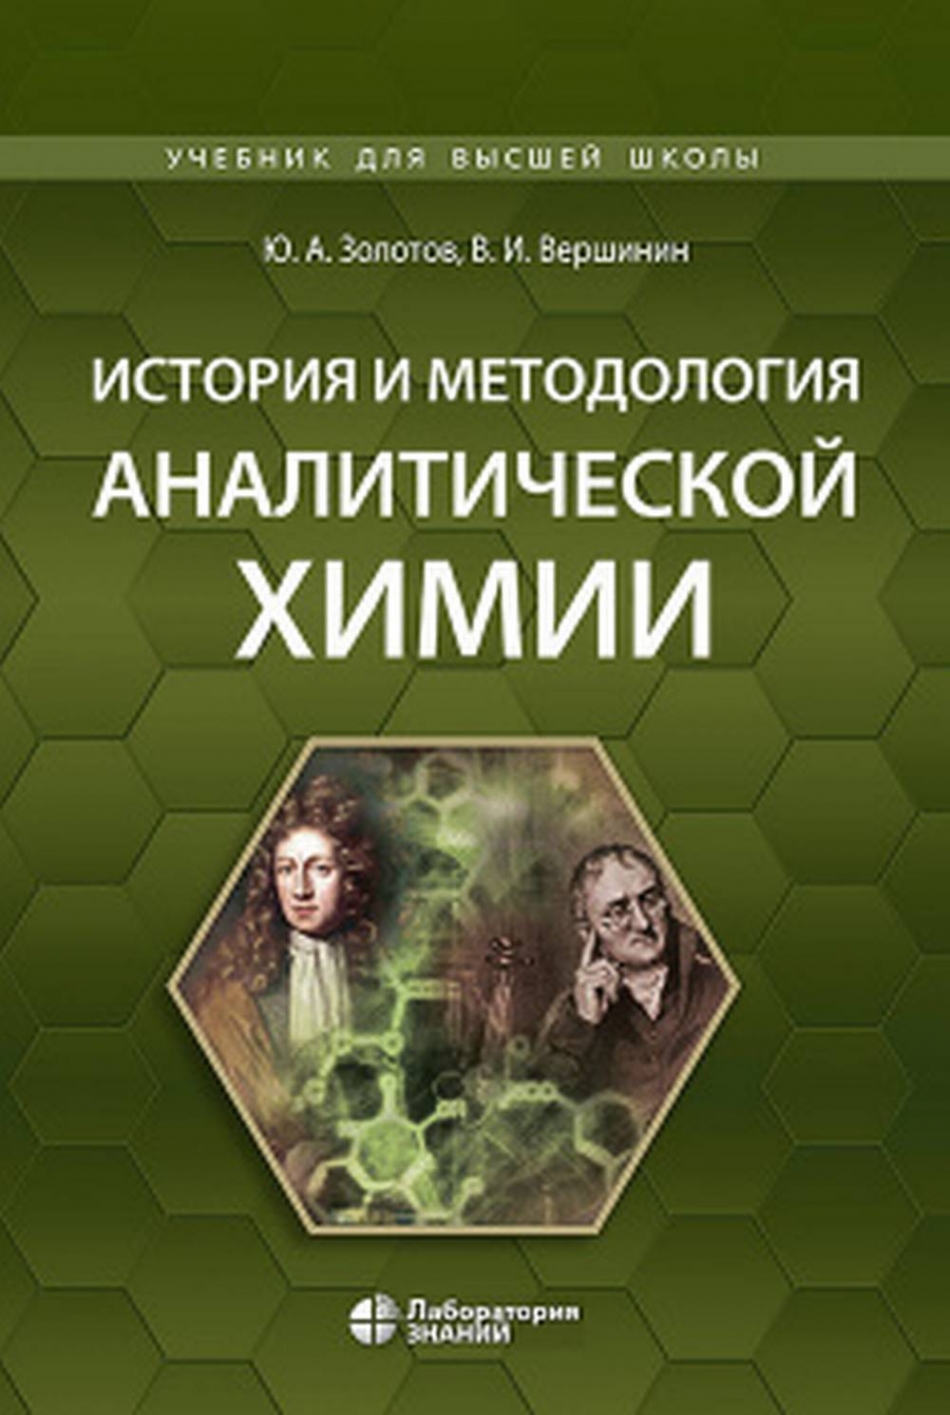 Вершинин В.И., Золотов Ю. А. История и методология аналитической химии 